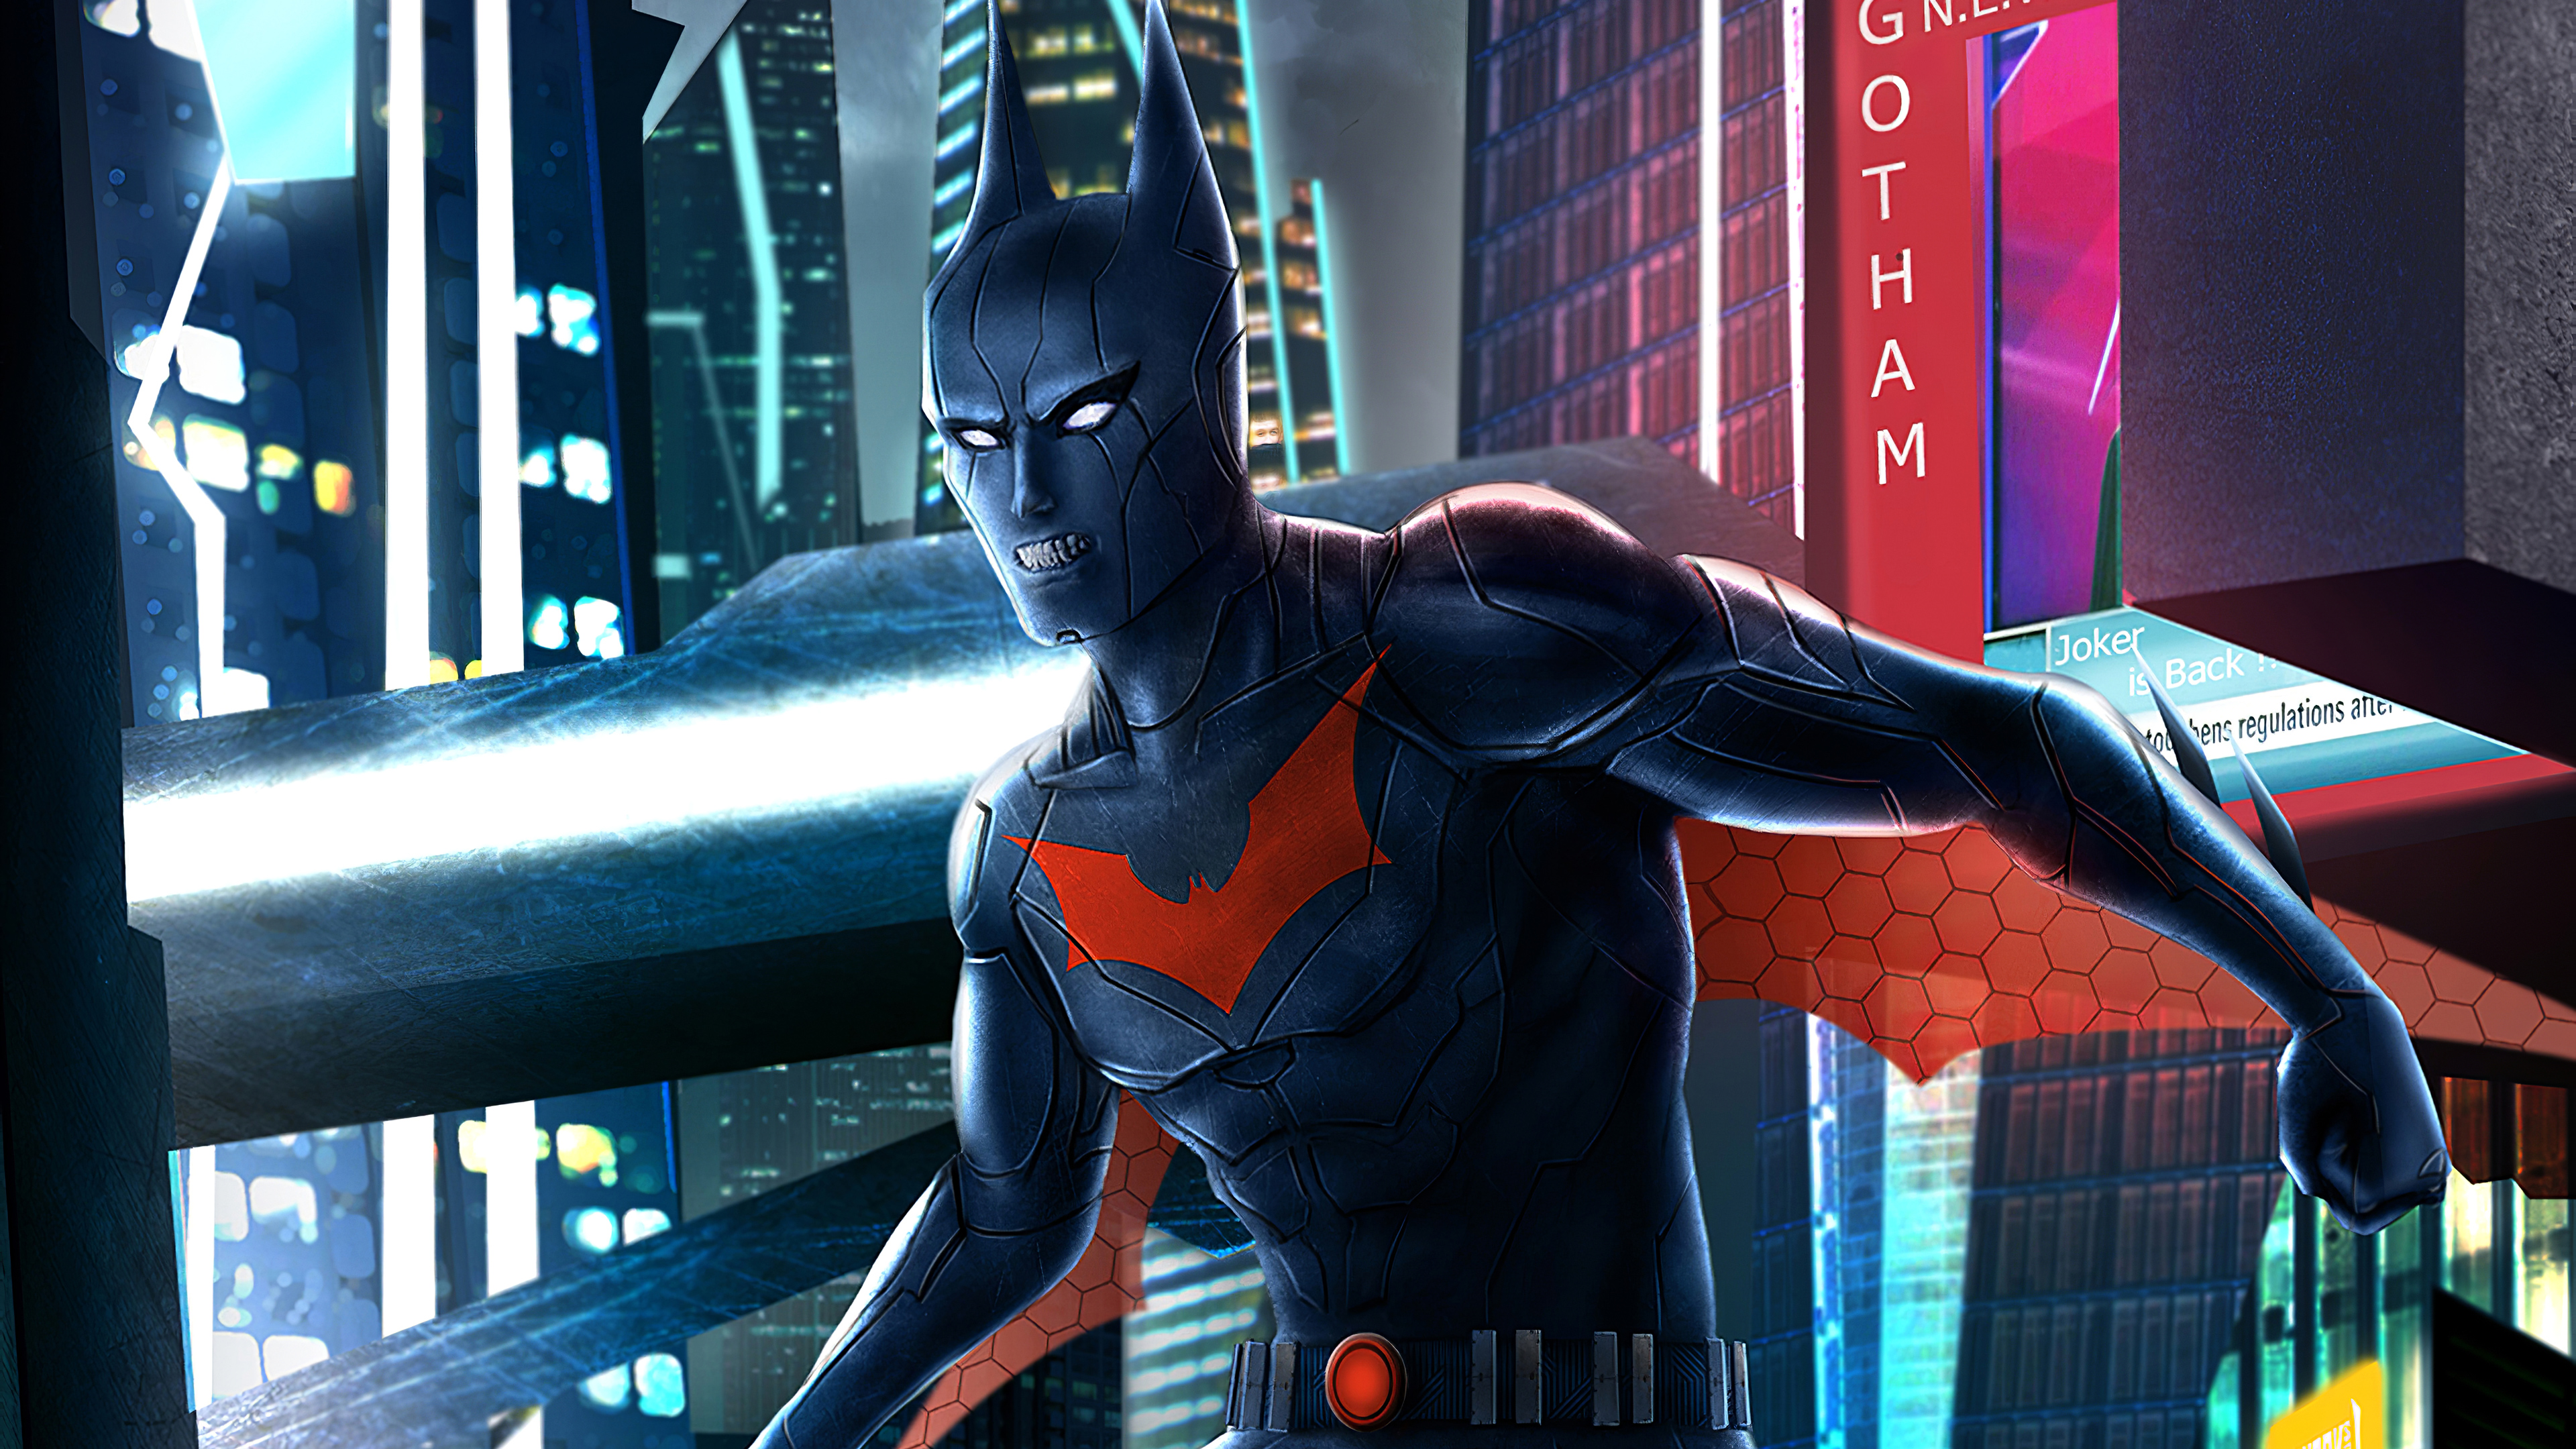 Batman Beyond 4k Ultra HD Wallpaper by TumTist